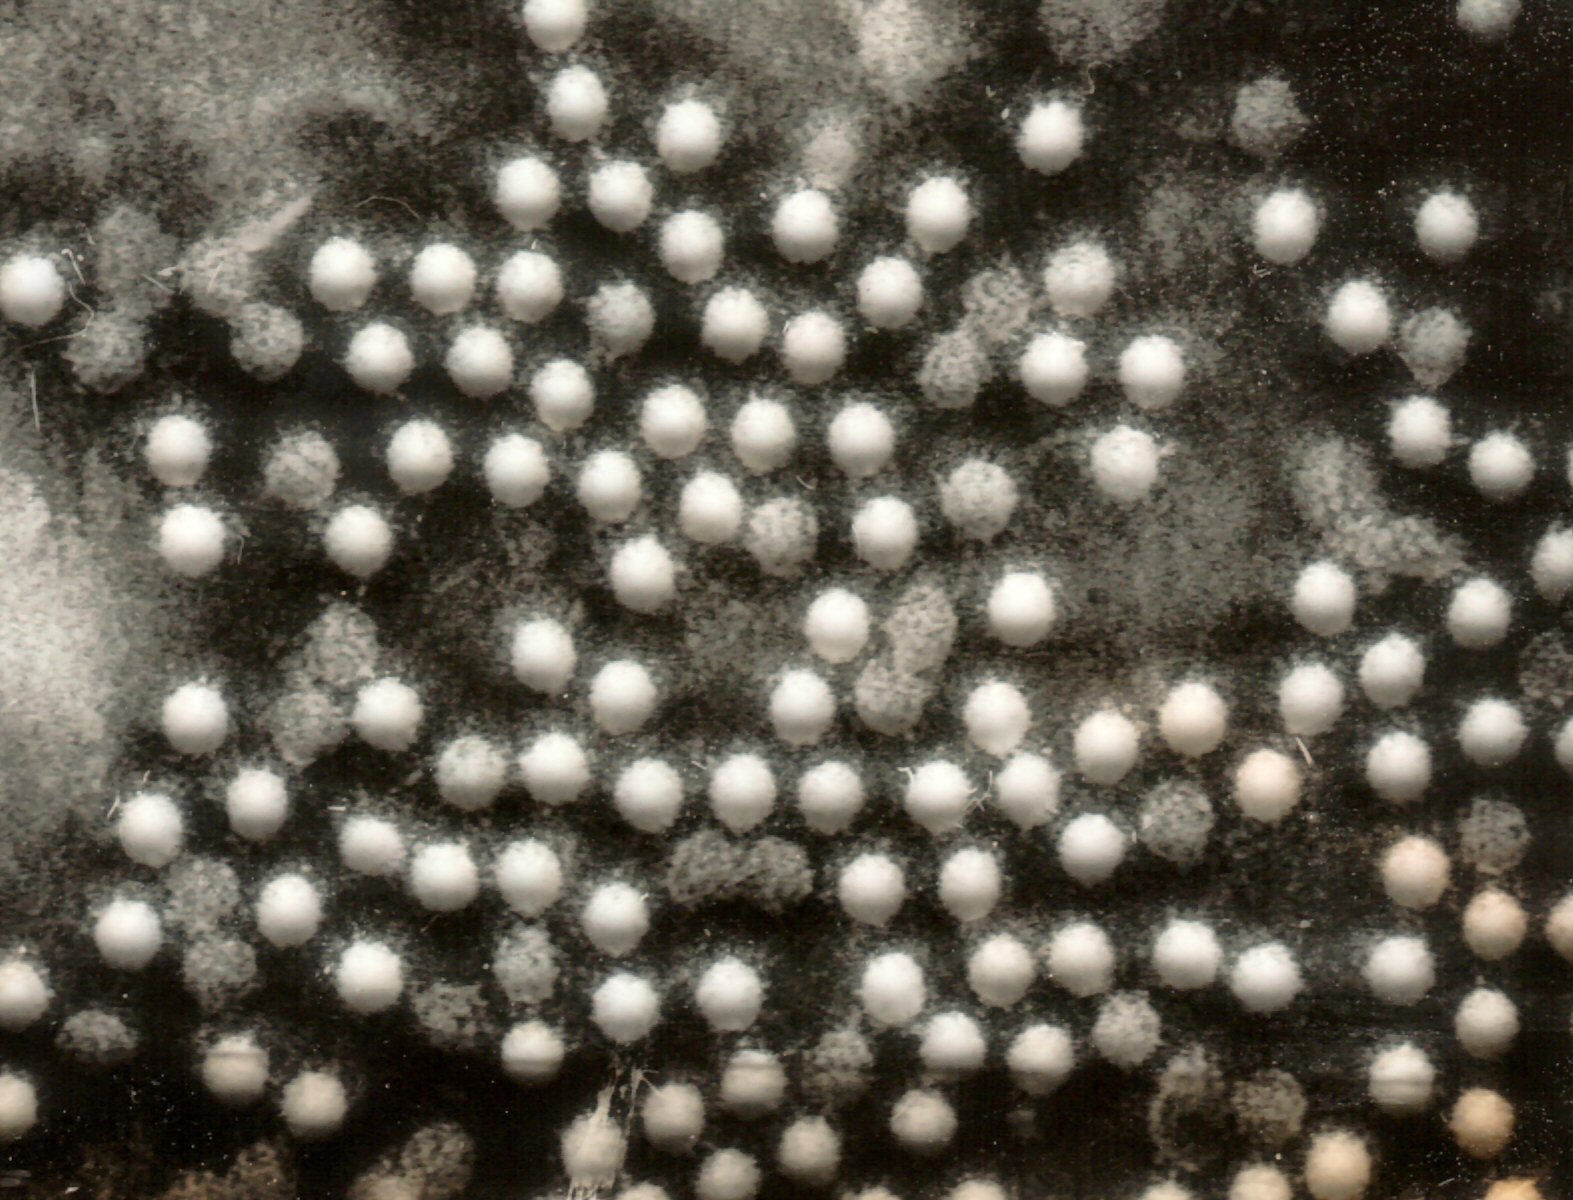 polioviruses